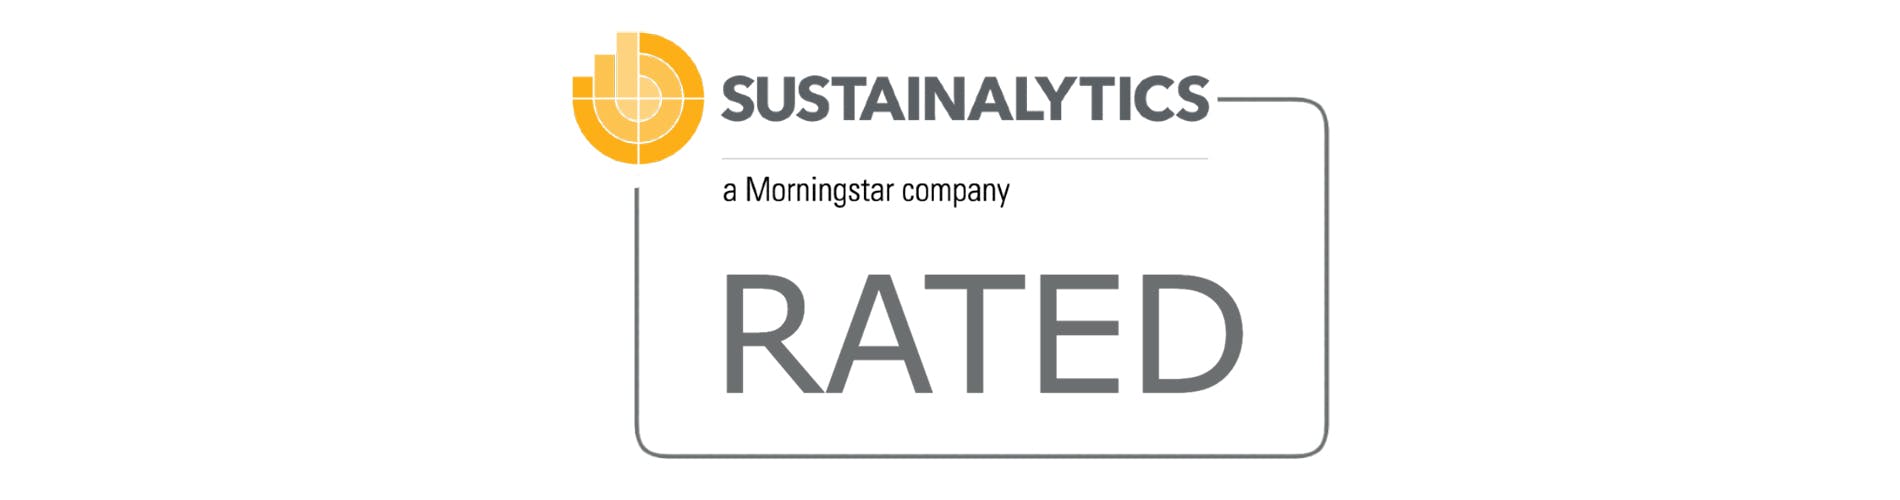 Sustainability rating images